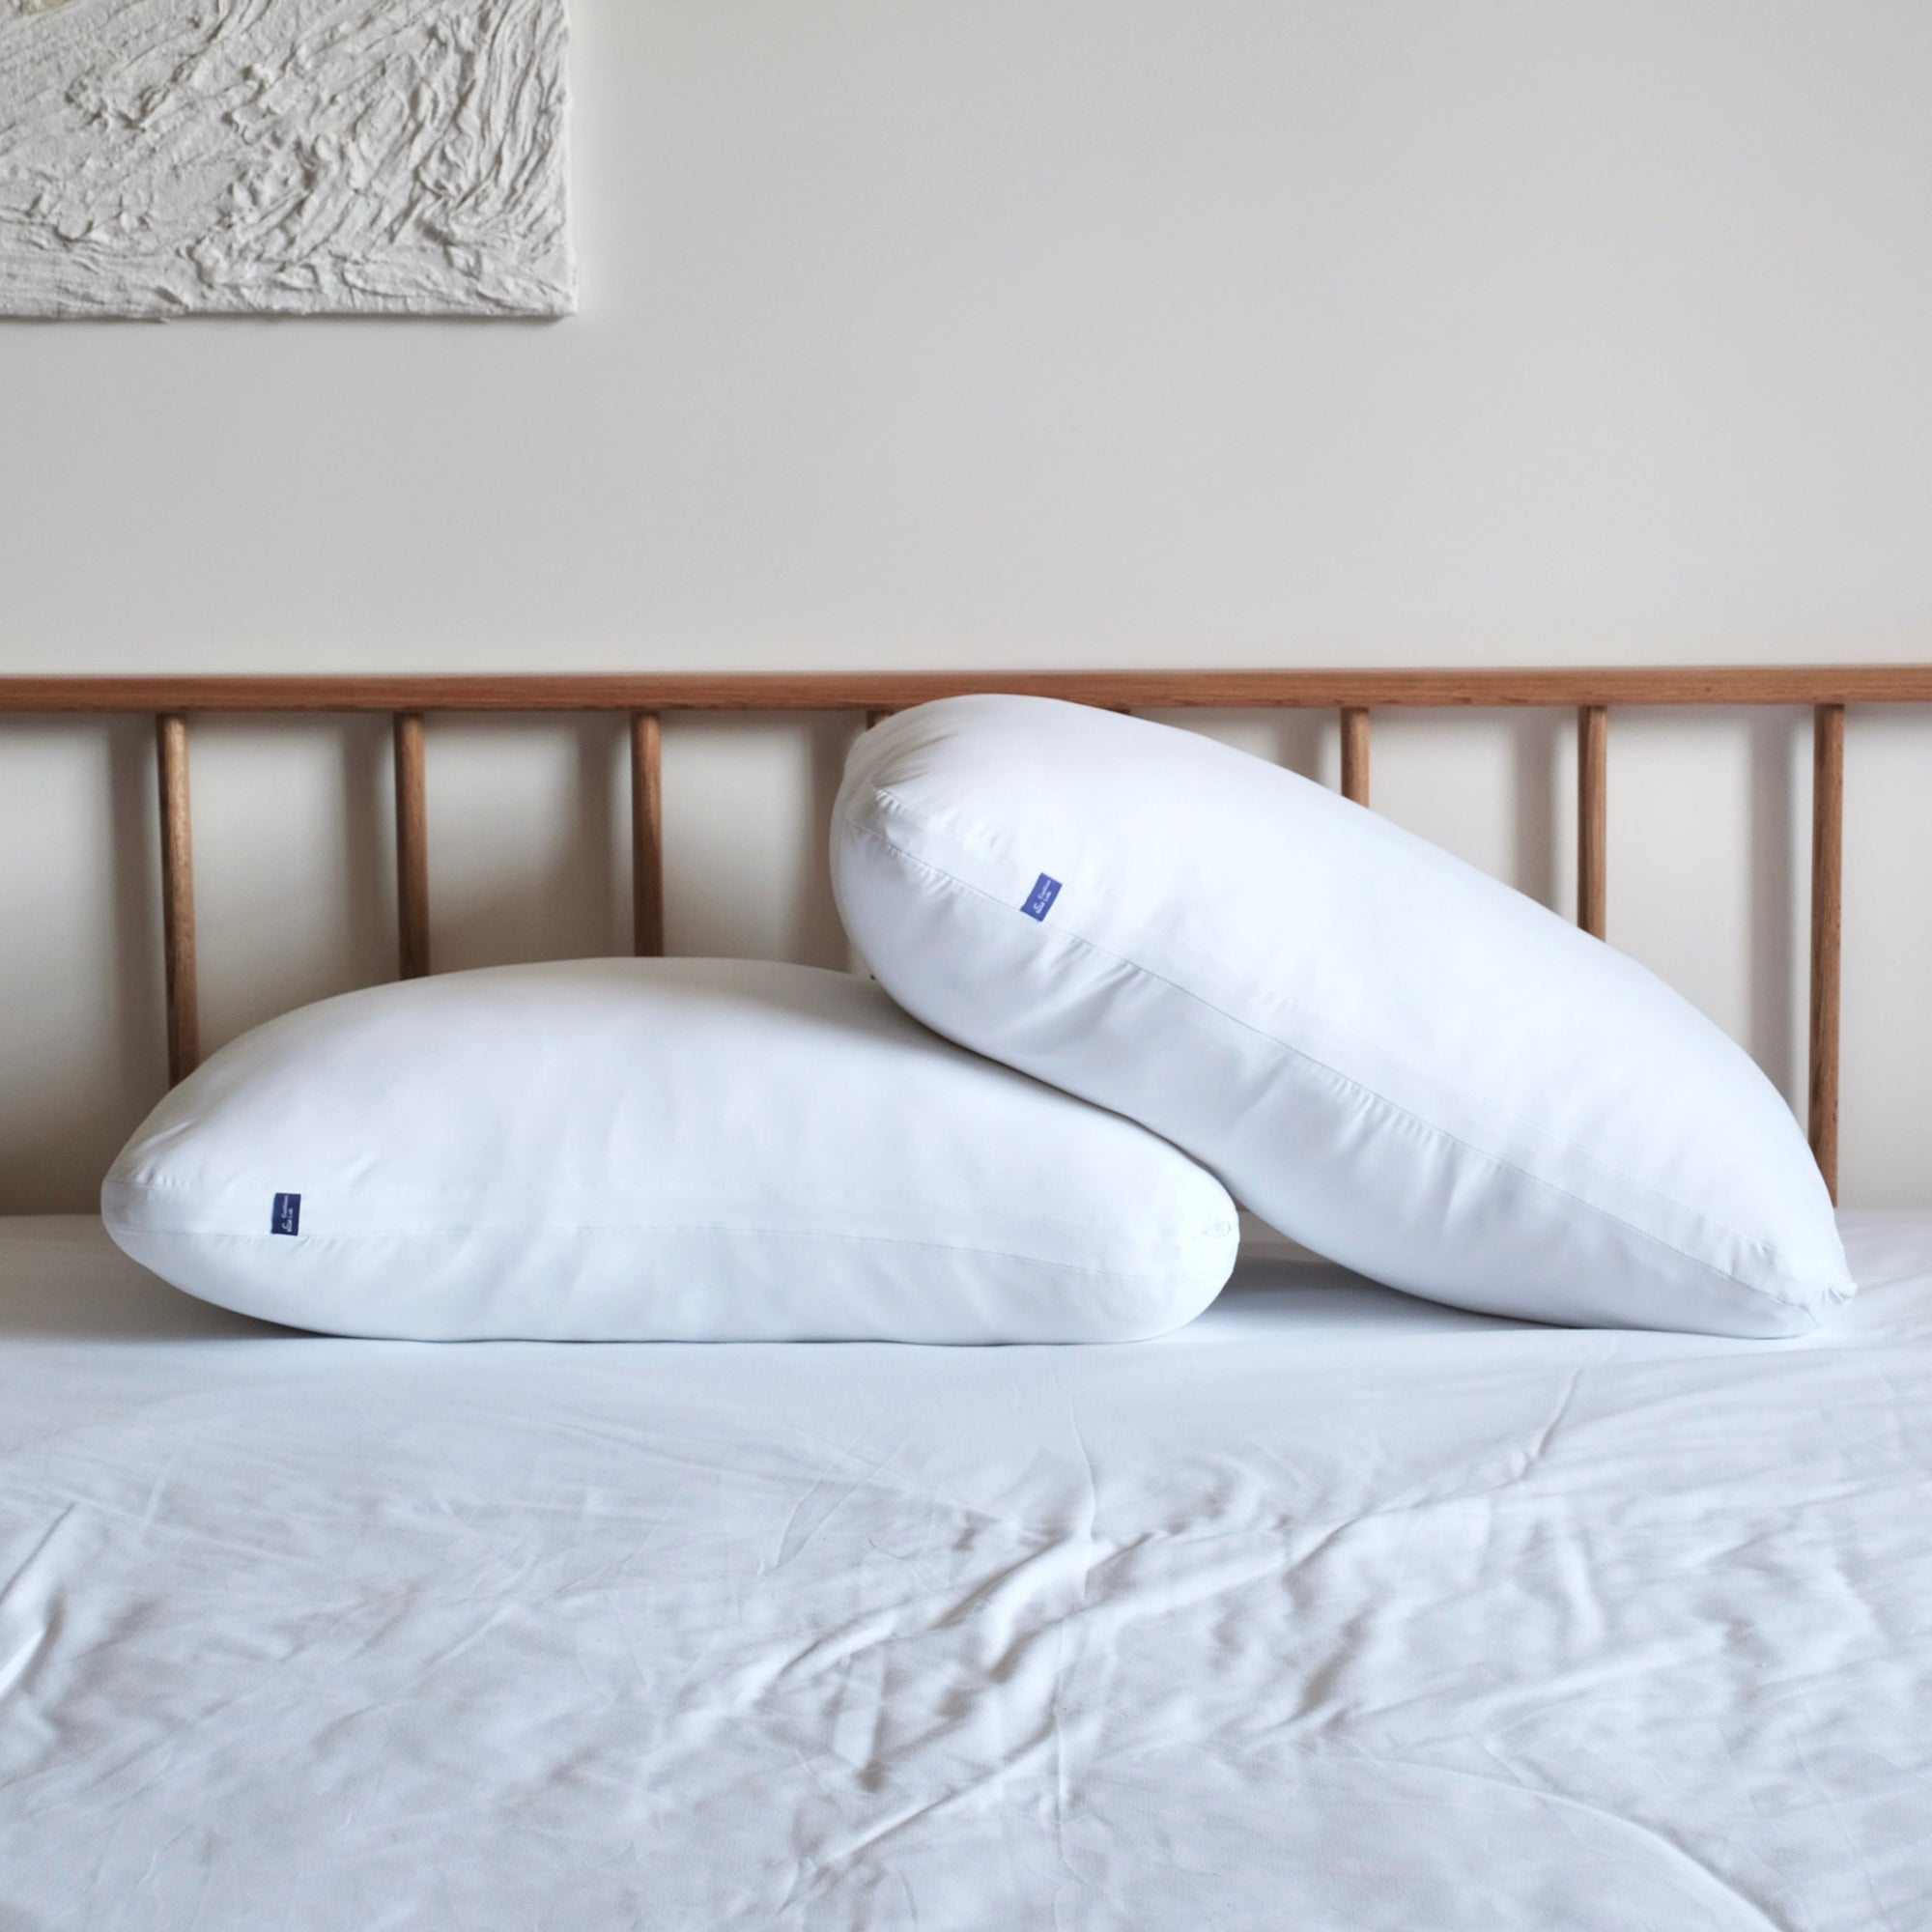 Mountain Mist Pillowloft Pillow Form